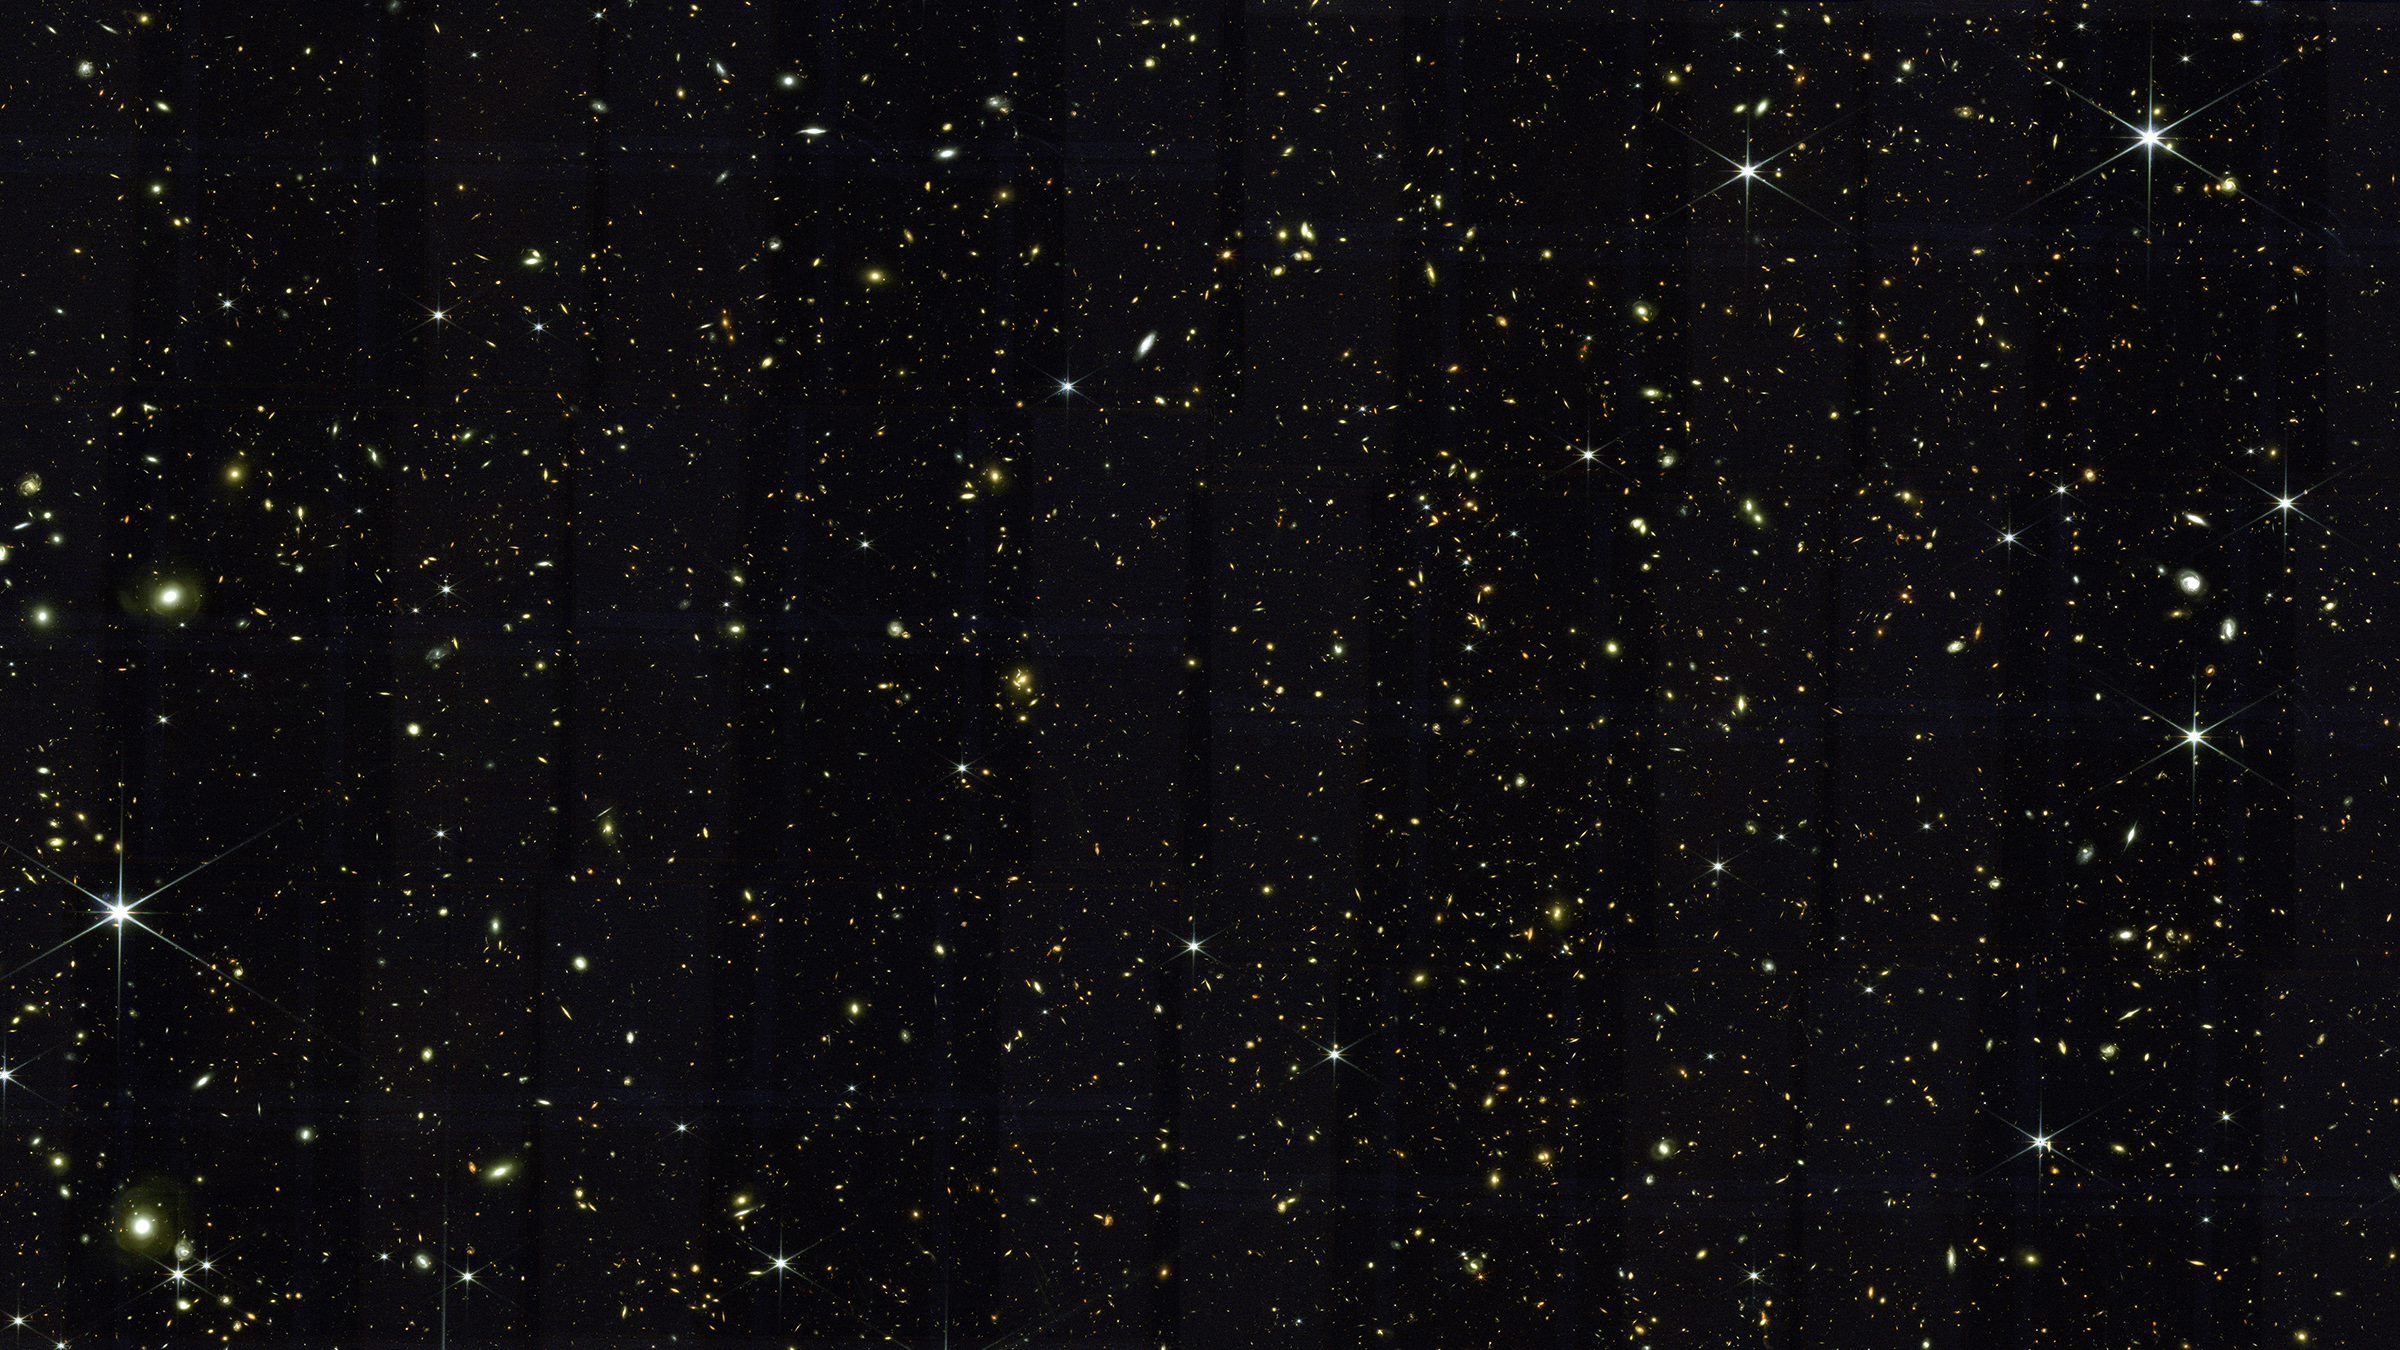 A field of stars